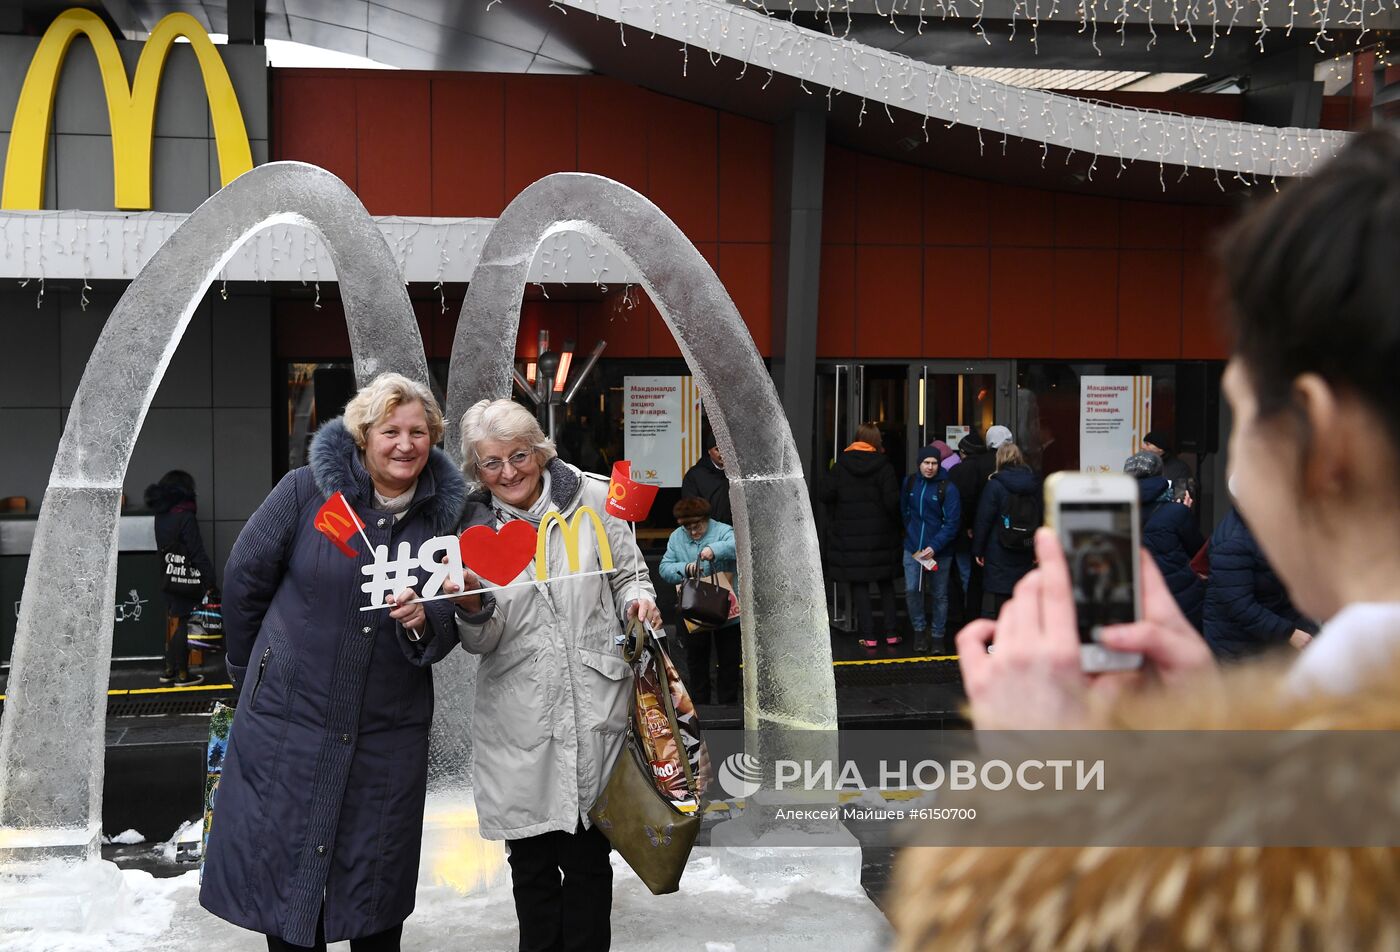 Первому в России ресторану "Макдональдс" исполняется 30 лет